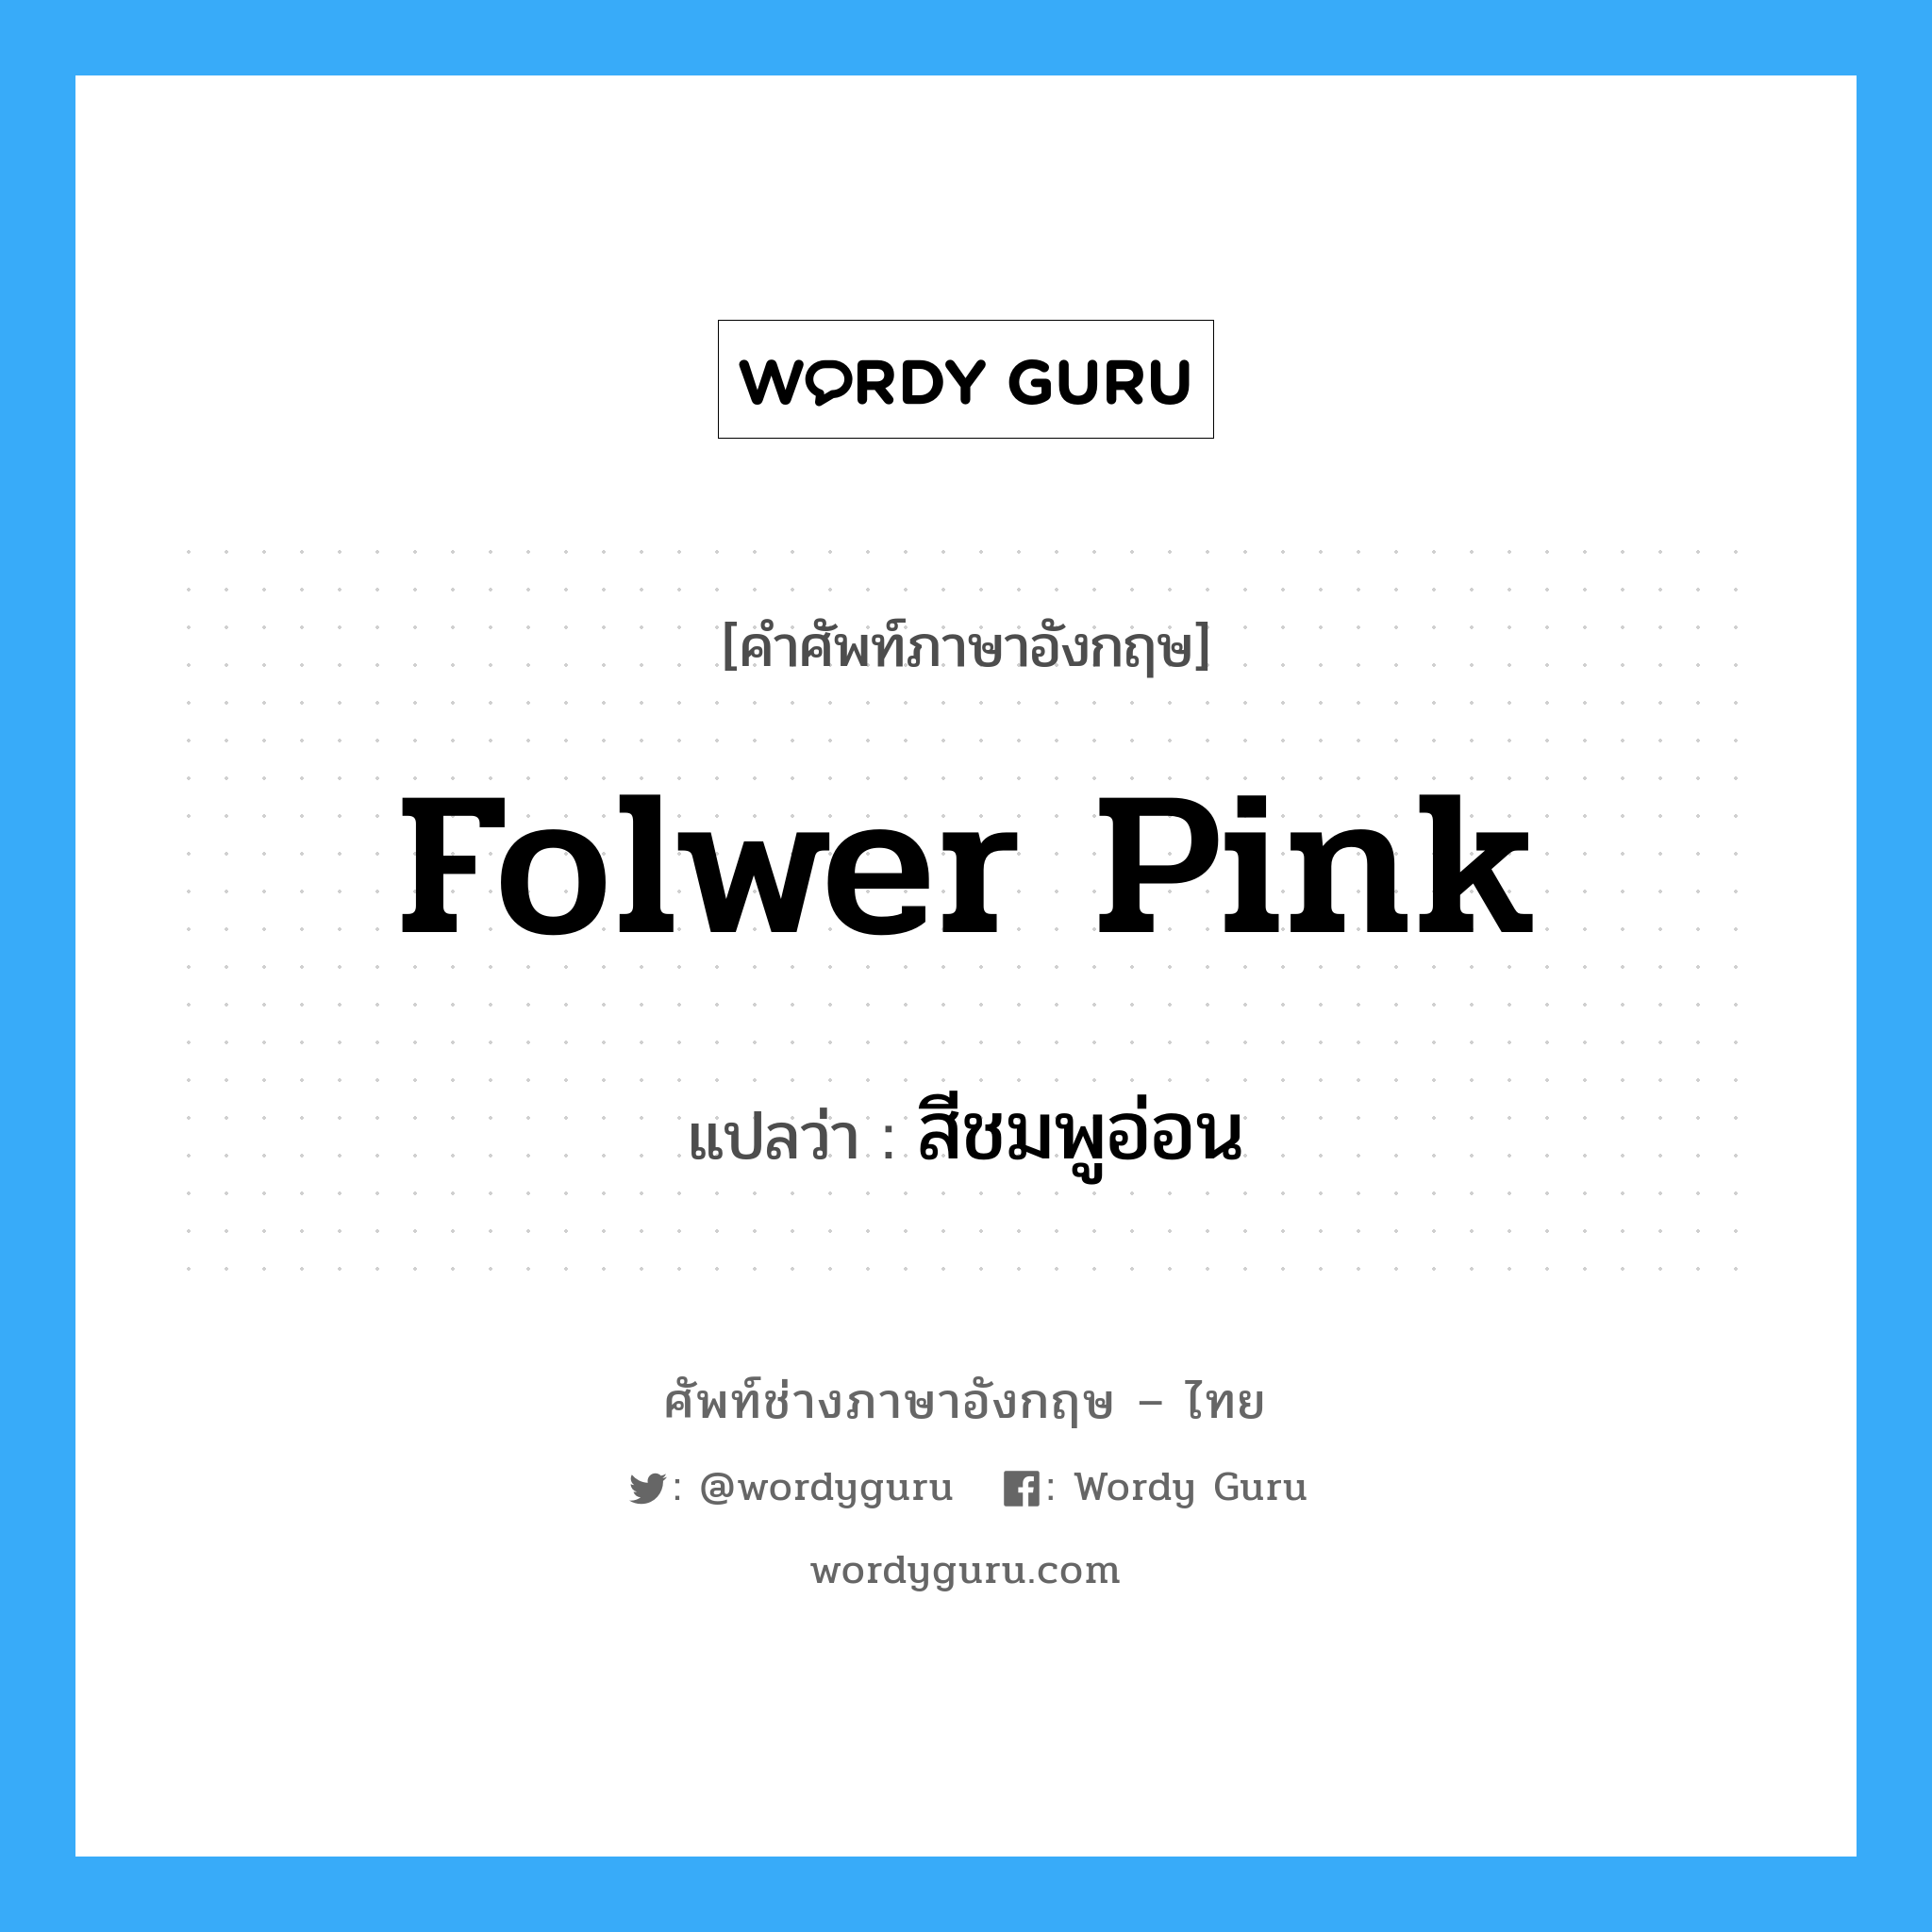 folwer pink แปลว่า?, คำศัพท์ช่างภาษาอังกฤษ - ไทย folwer pink คำศัพท์ภาษาอังกฤษ folwer pink แปลว่า สีชมพูอ่อน